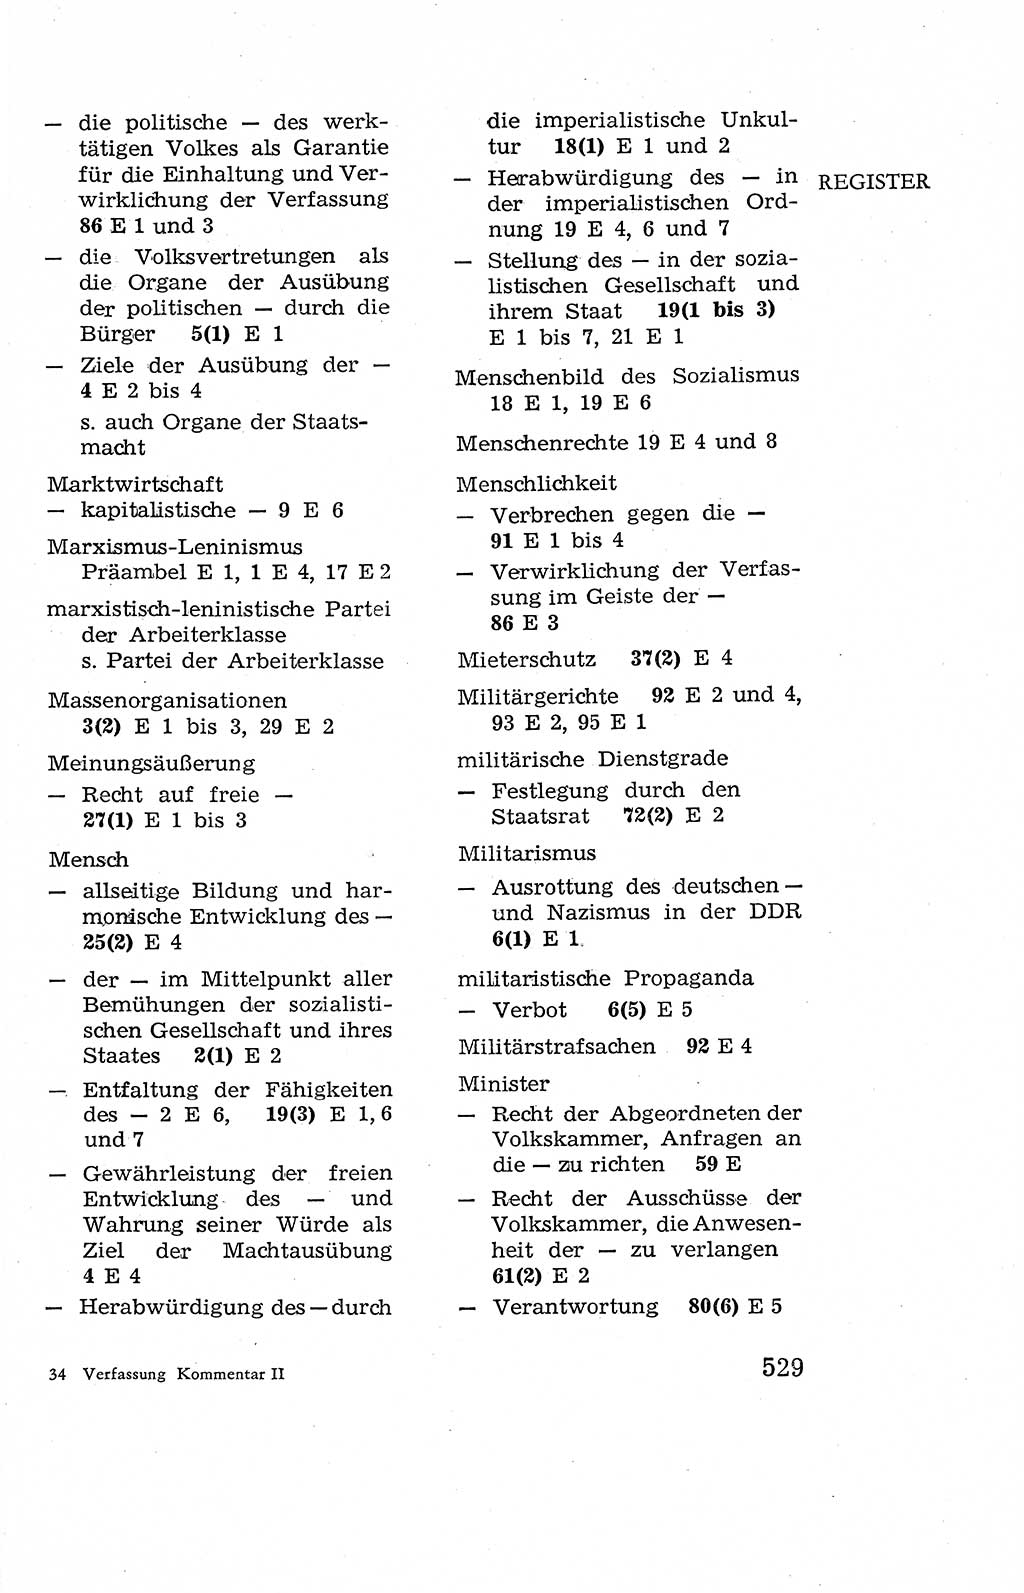 Verfassung der Deutschen Demokratischen Republik (DDR), Dokumente, Kommentar 1969, Band 2, Seite 529 (Verf. DDR Dok. Komm. 1969, Bd. 2, S. 529)